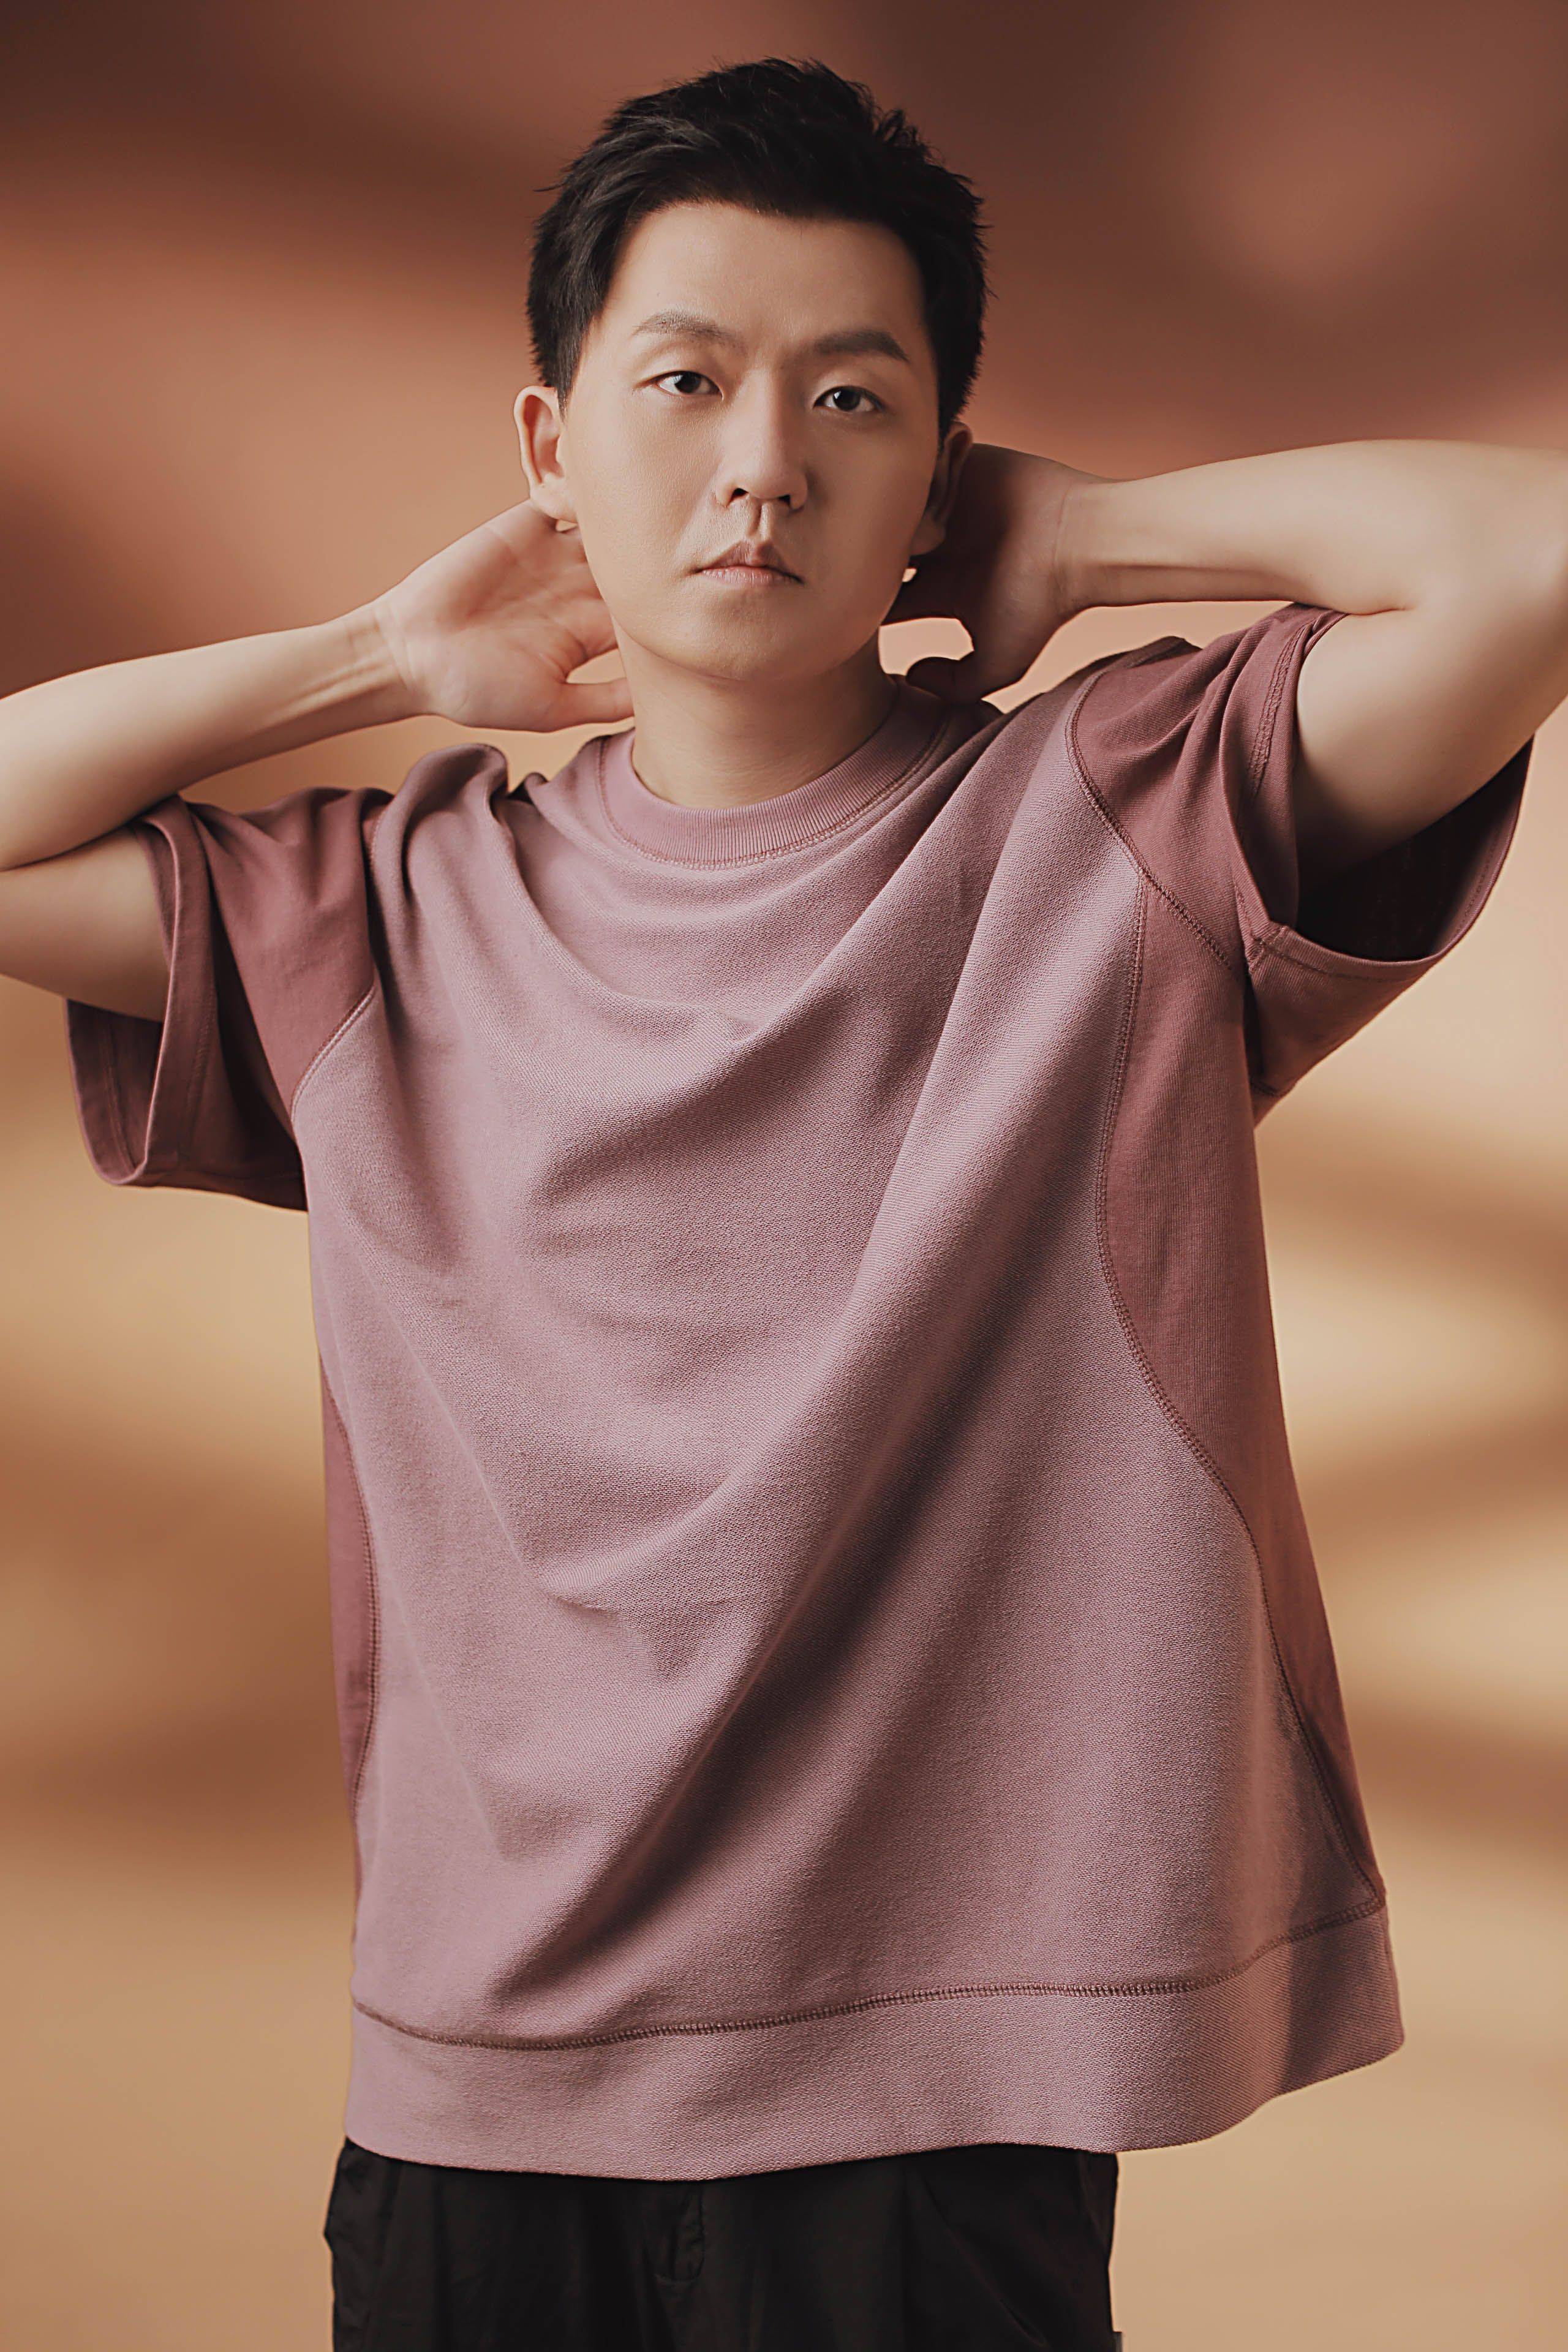 武麟粉色暗纹运动衫写真上线 彰显典雅男生内敛气质